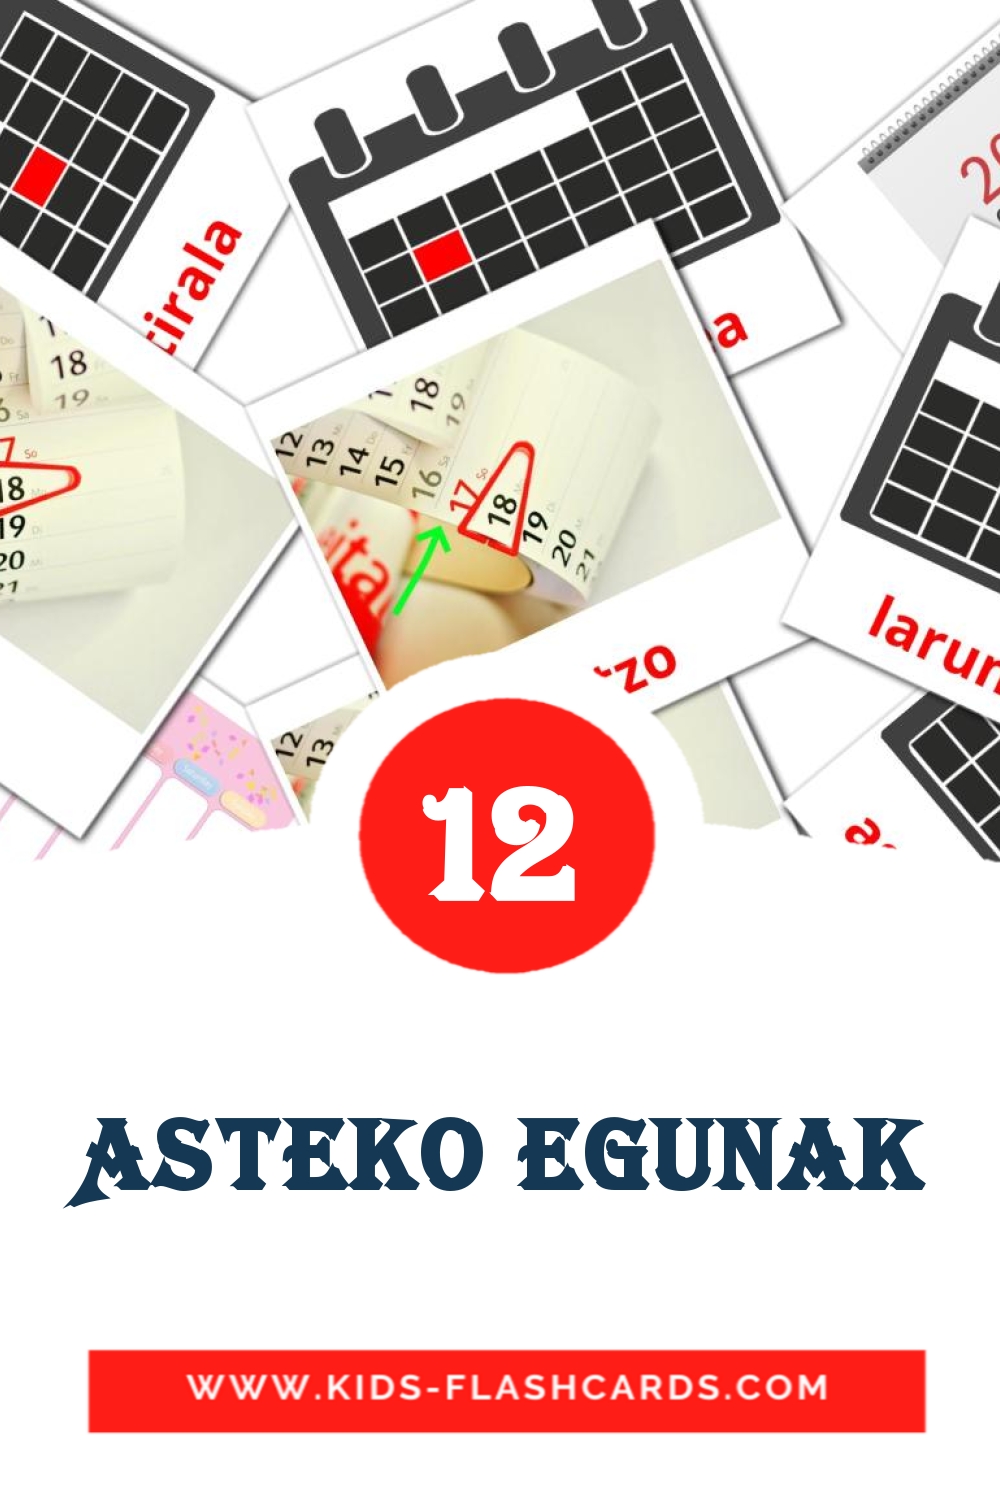 Asteko egunak на баскском для Детского Сада (12 карточек)